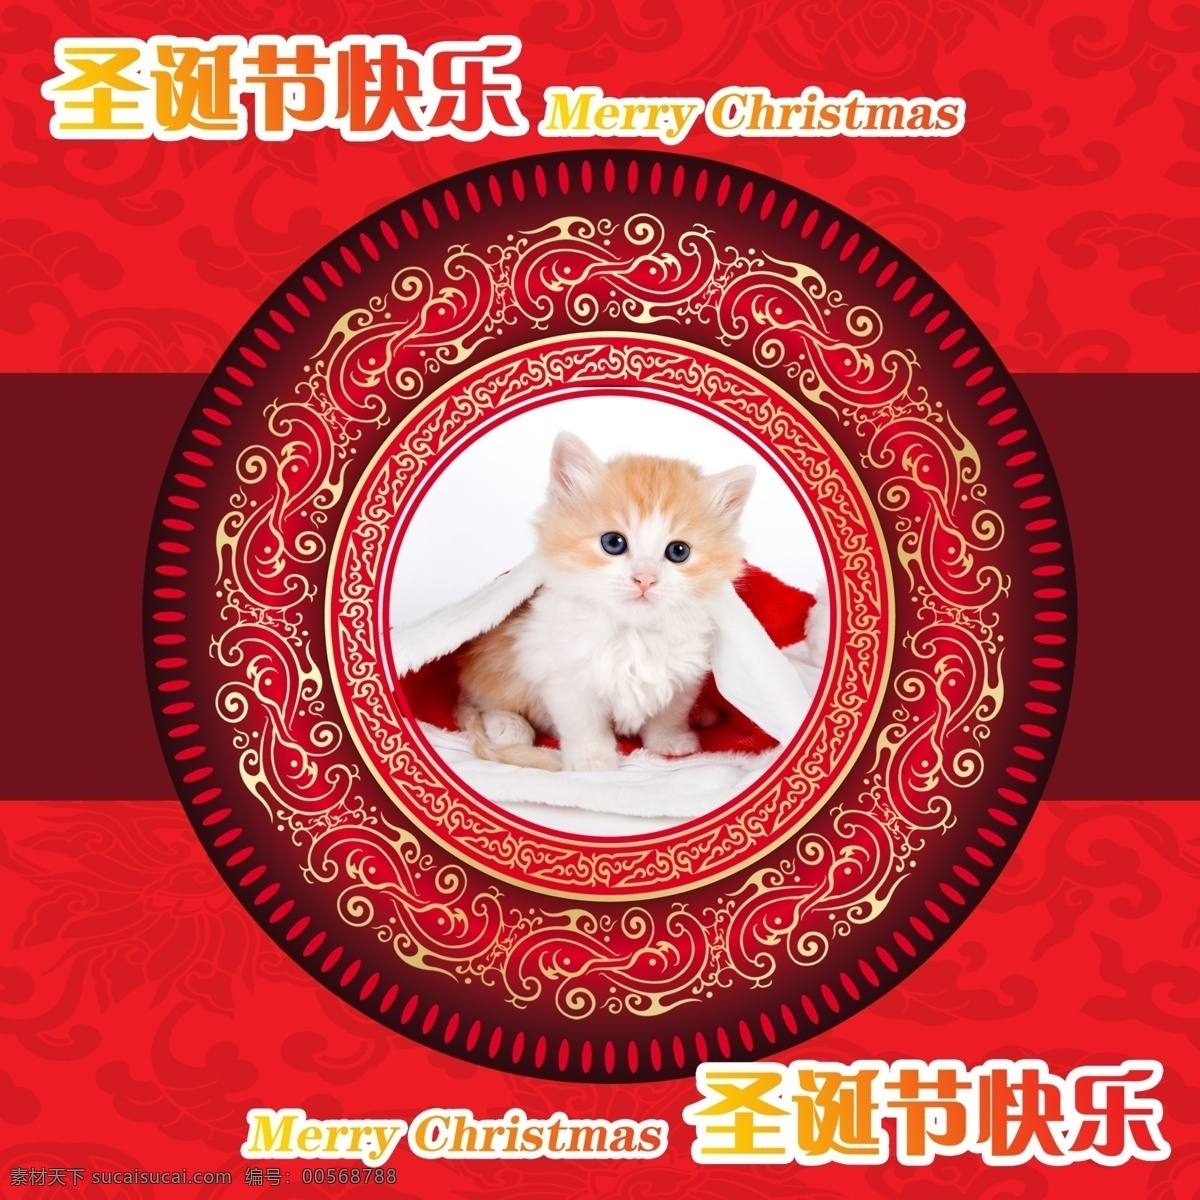 白色 贺新年 红色 节日素材 卡通 毛绒玩具 圣诞 圣诞节 小猫 模板下载 圣诞小猫04 元旦 源文件 psd源文件